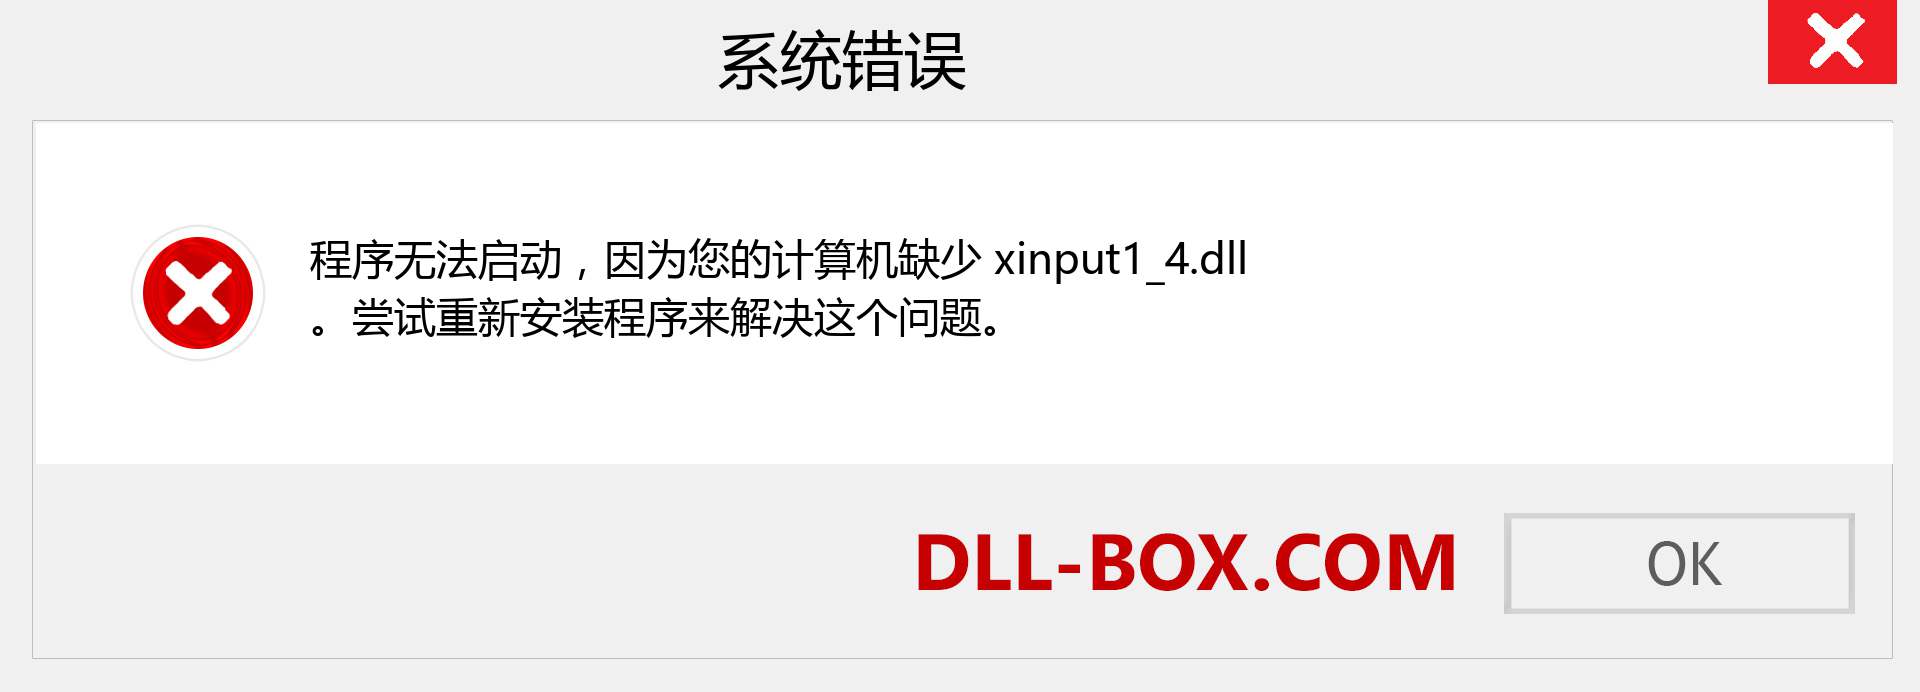 xinput1_4.dll 文件丢失？。 适用于 Windows 7、8、10 的下载 - 修复 Windows、照片、图像上的 xinput1_4 dll 丢失错误